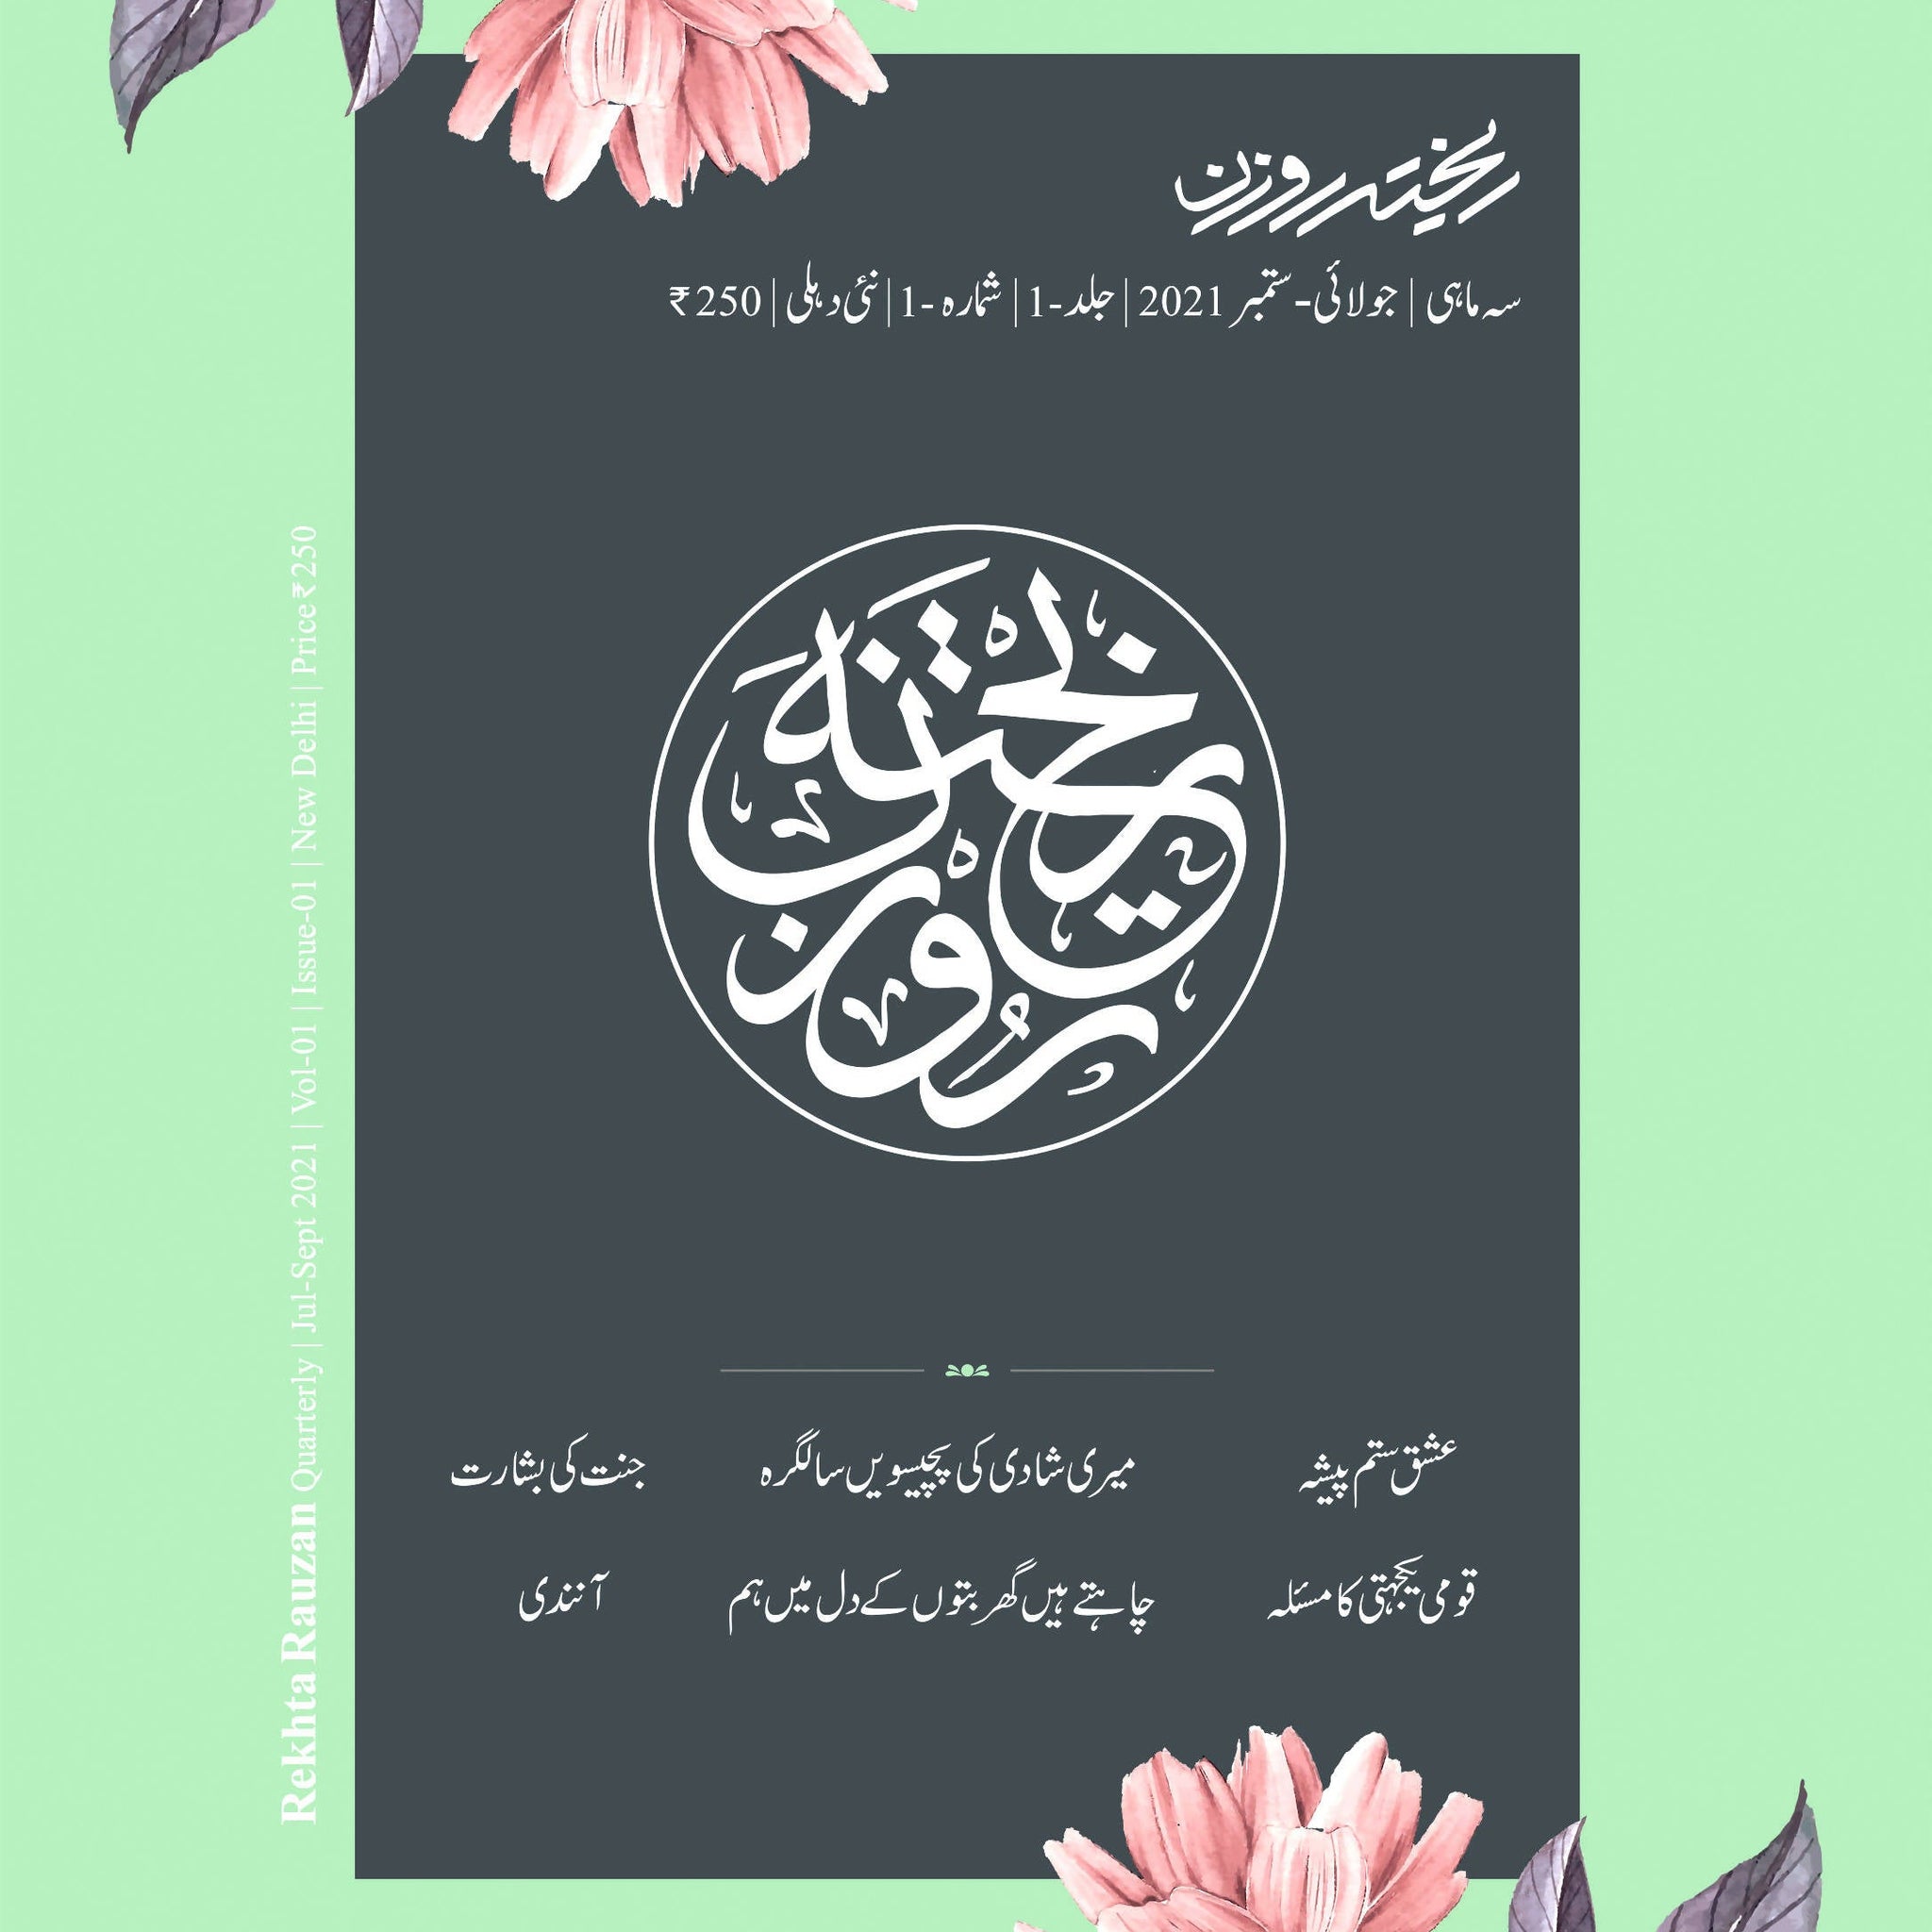 Rekhta Rauzan 1st Ed, Urdu